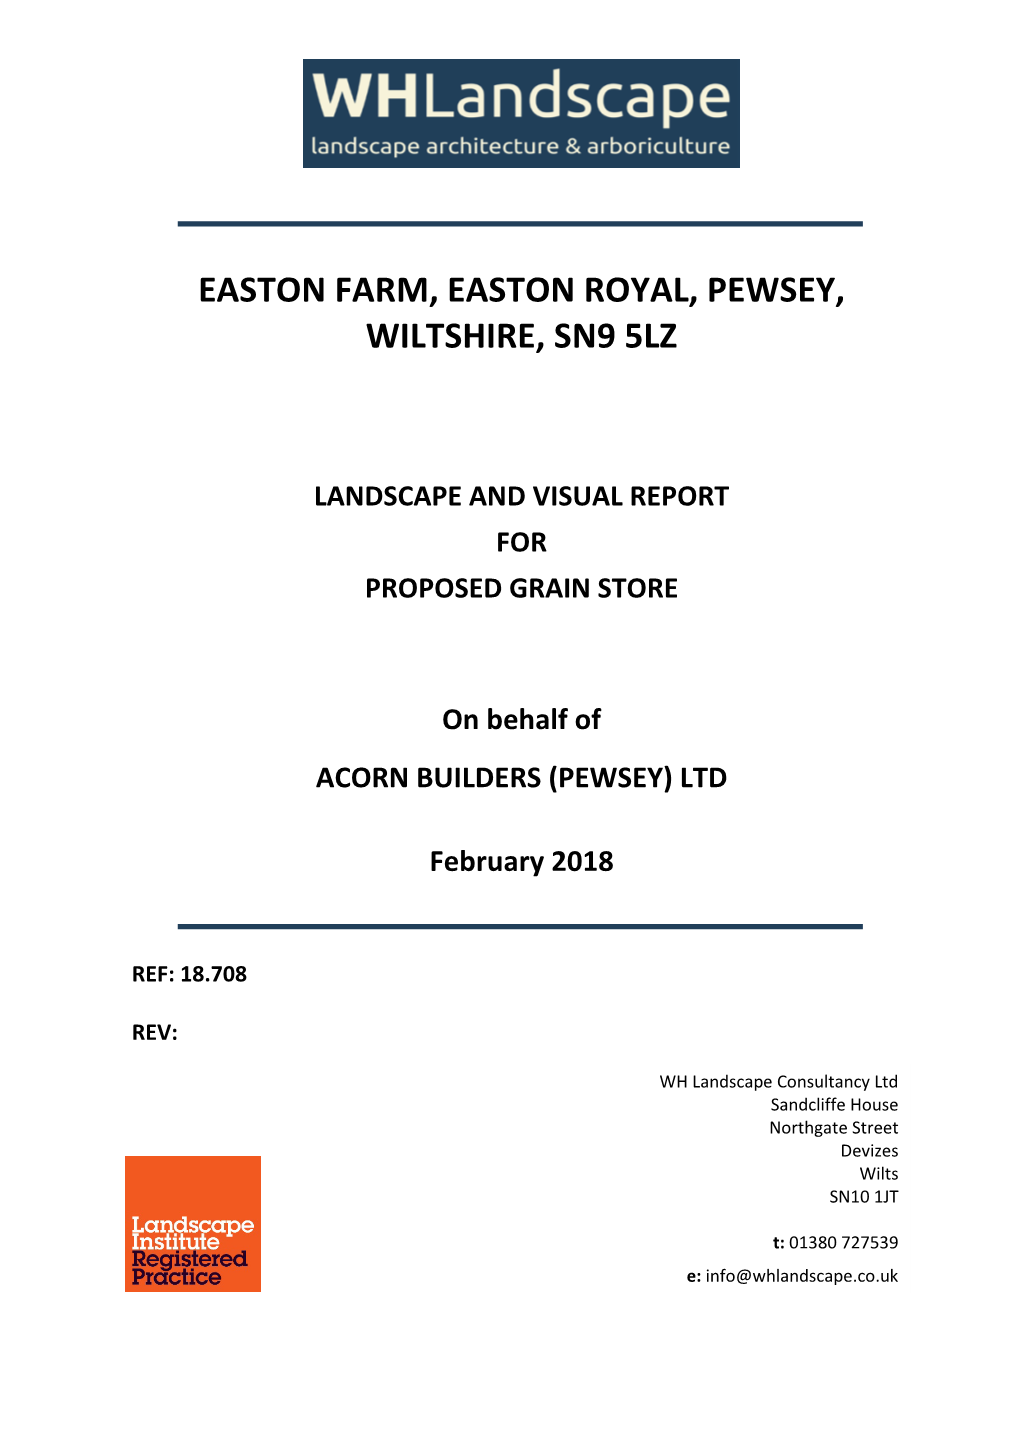 Easton Farm, Easton Royal, Pewsey, Wiltshire, Sn9 5Lz